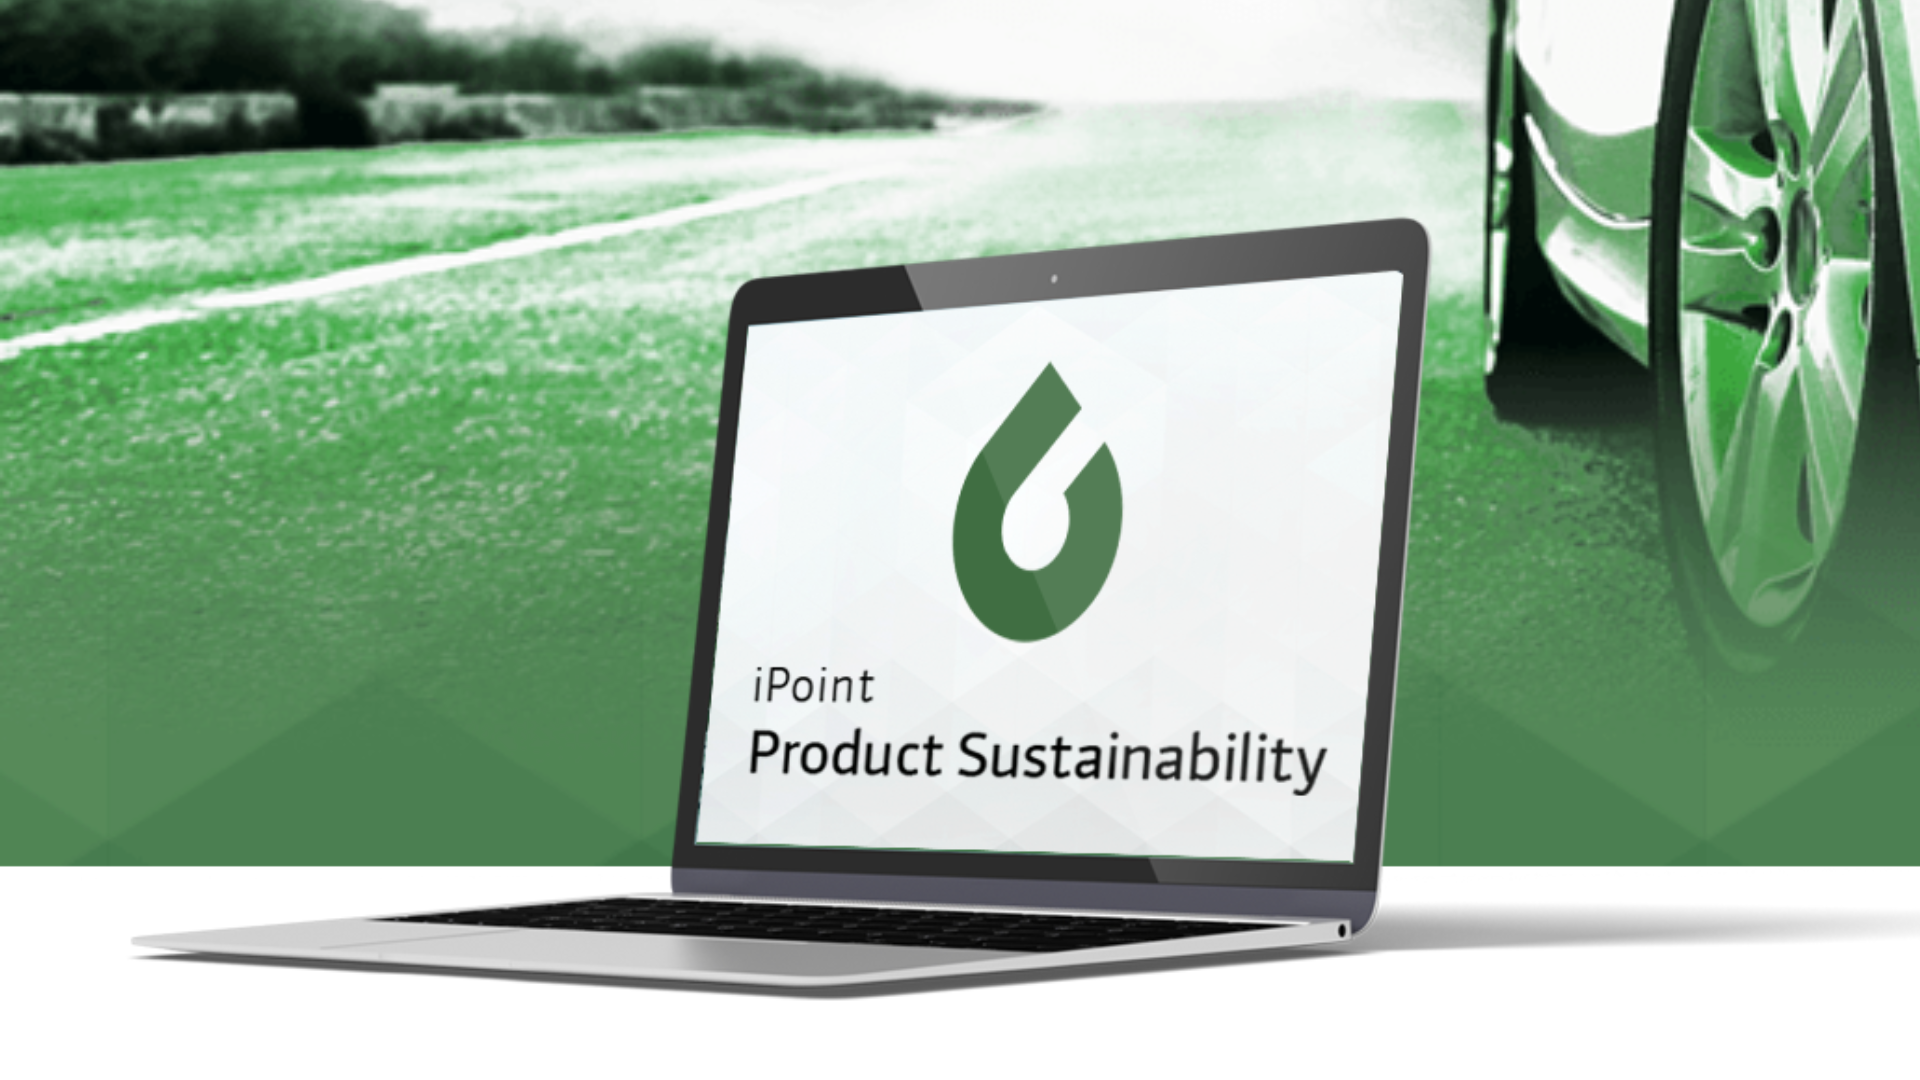 iPoint-Product-Sustainability-Automotive_16-9